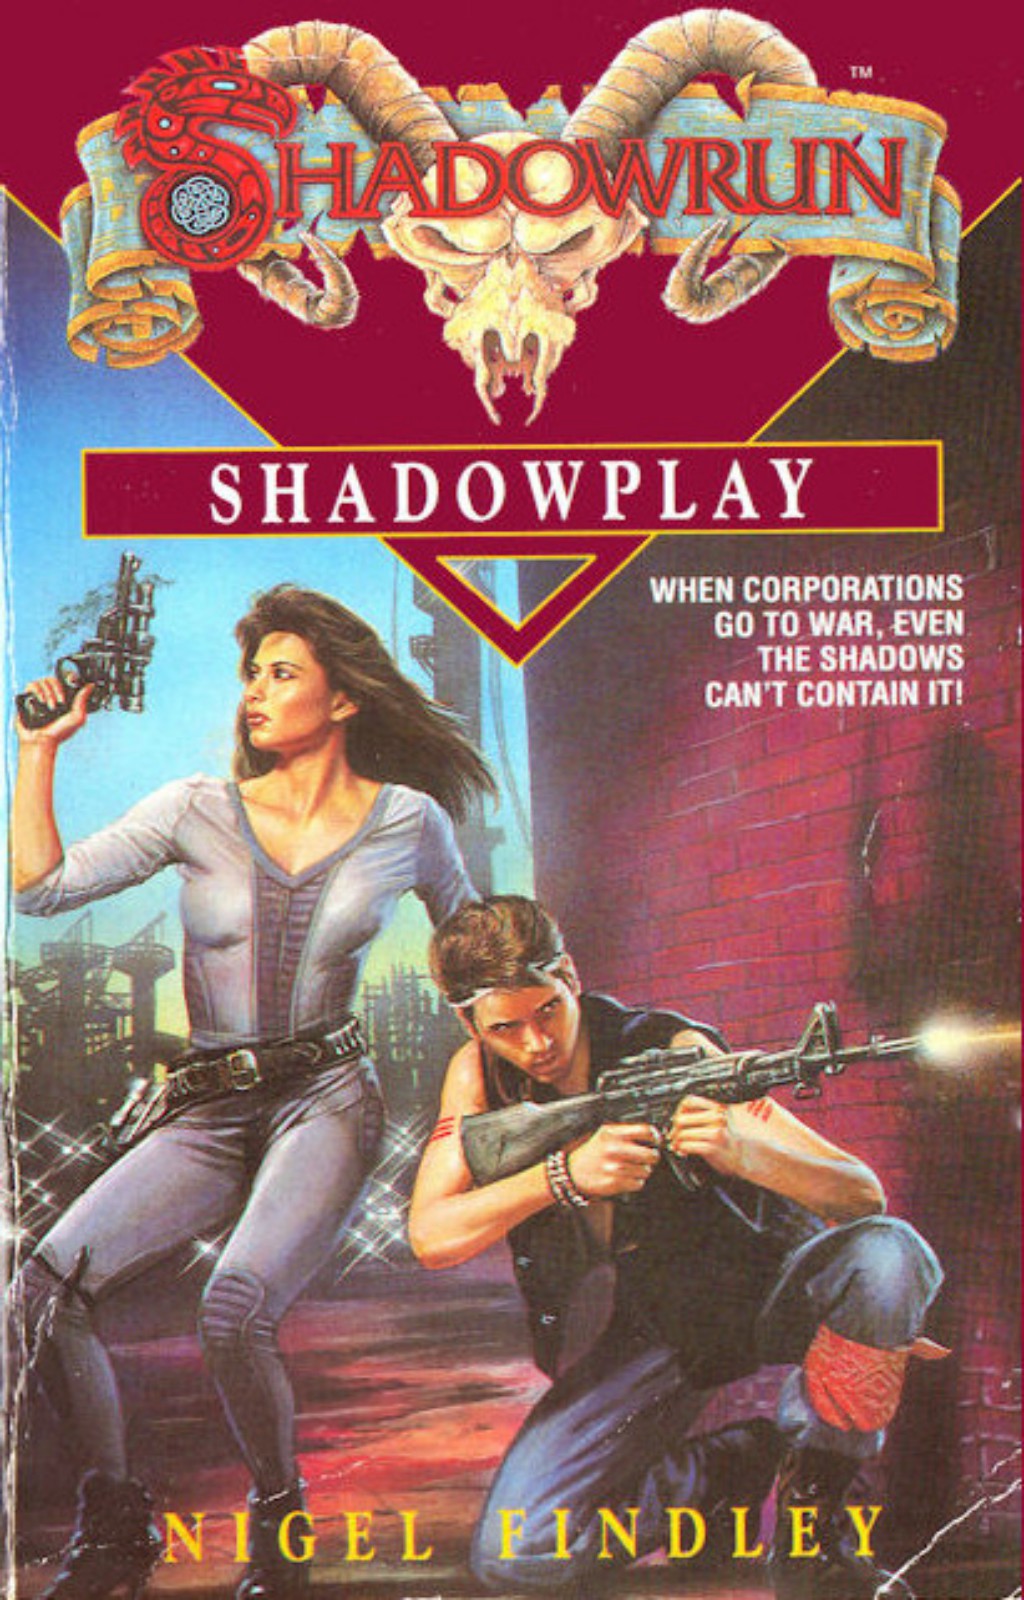 Shadowrun: Shadowplay